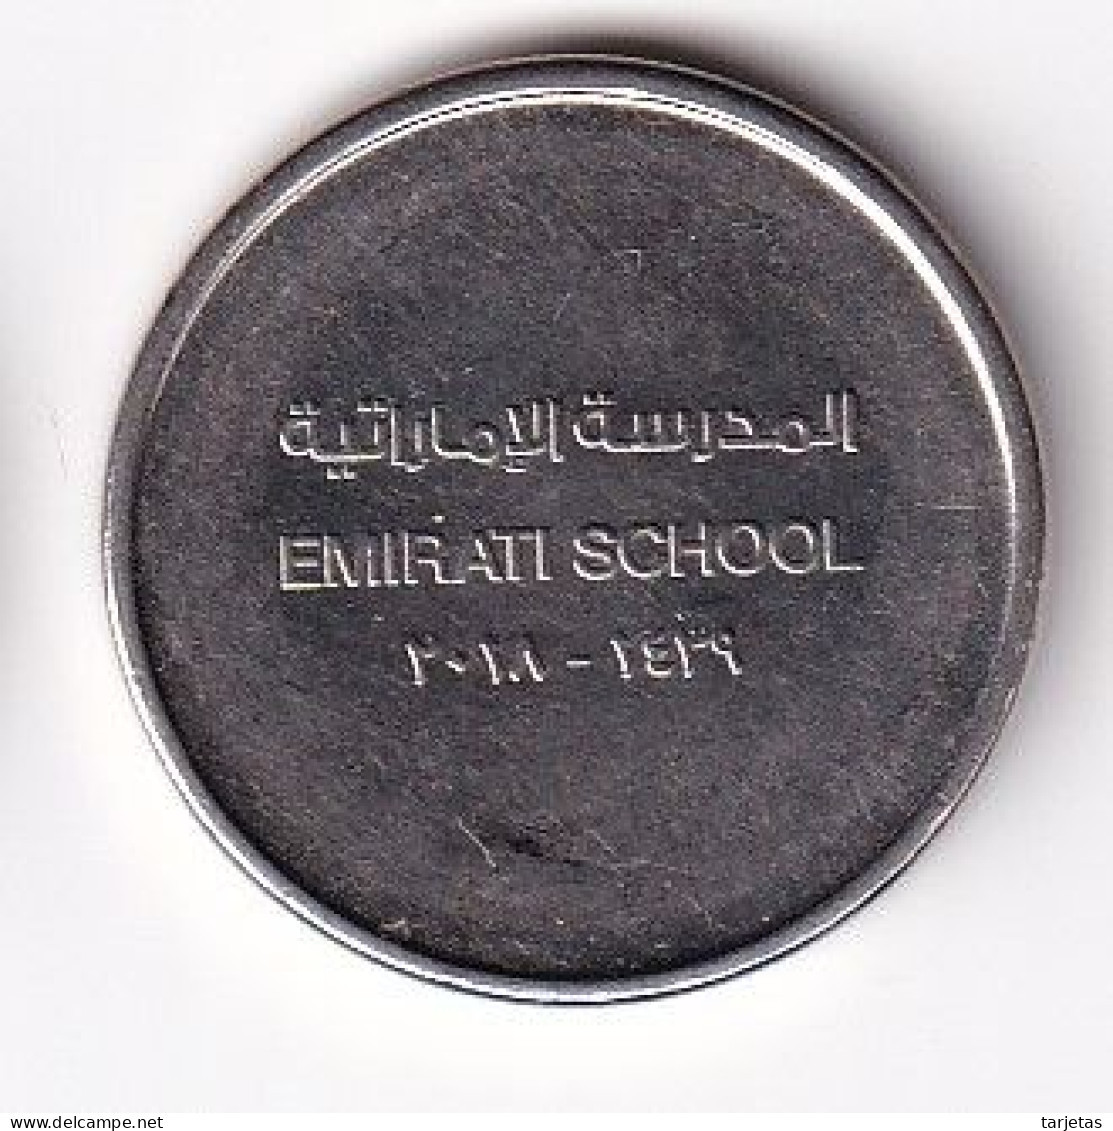 MONEDA DE EMIRATOS ARABES DE 1 DIRHAM DEL AÑO 2018 - EMIRATI SCHOOL (COIN) - United Arab Emirates